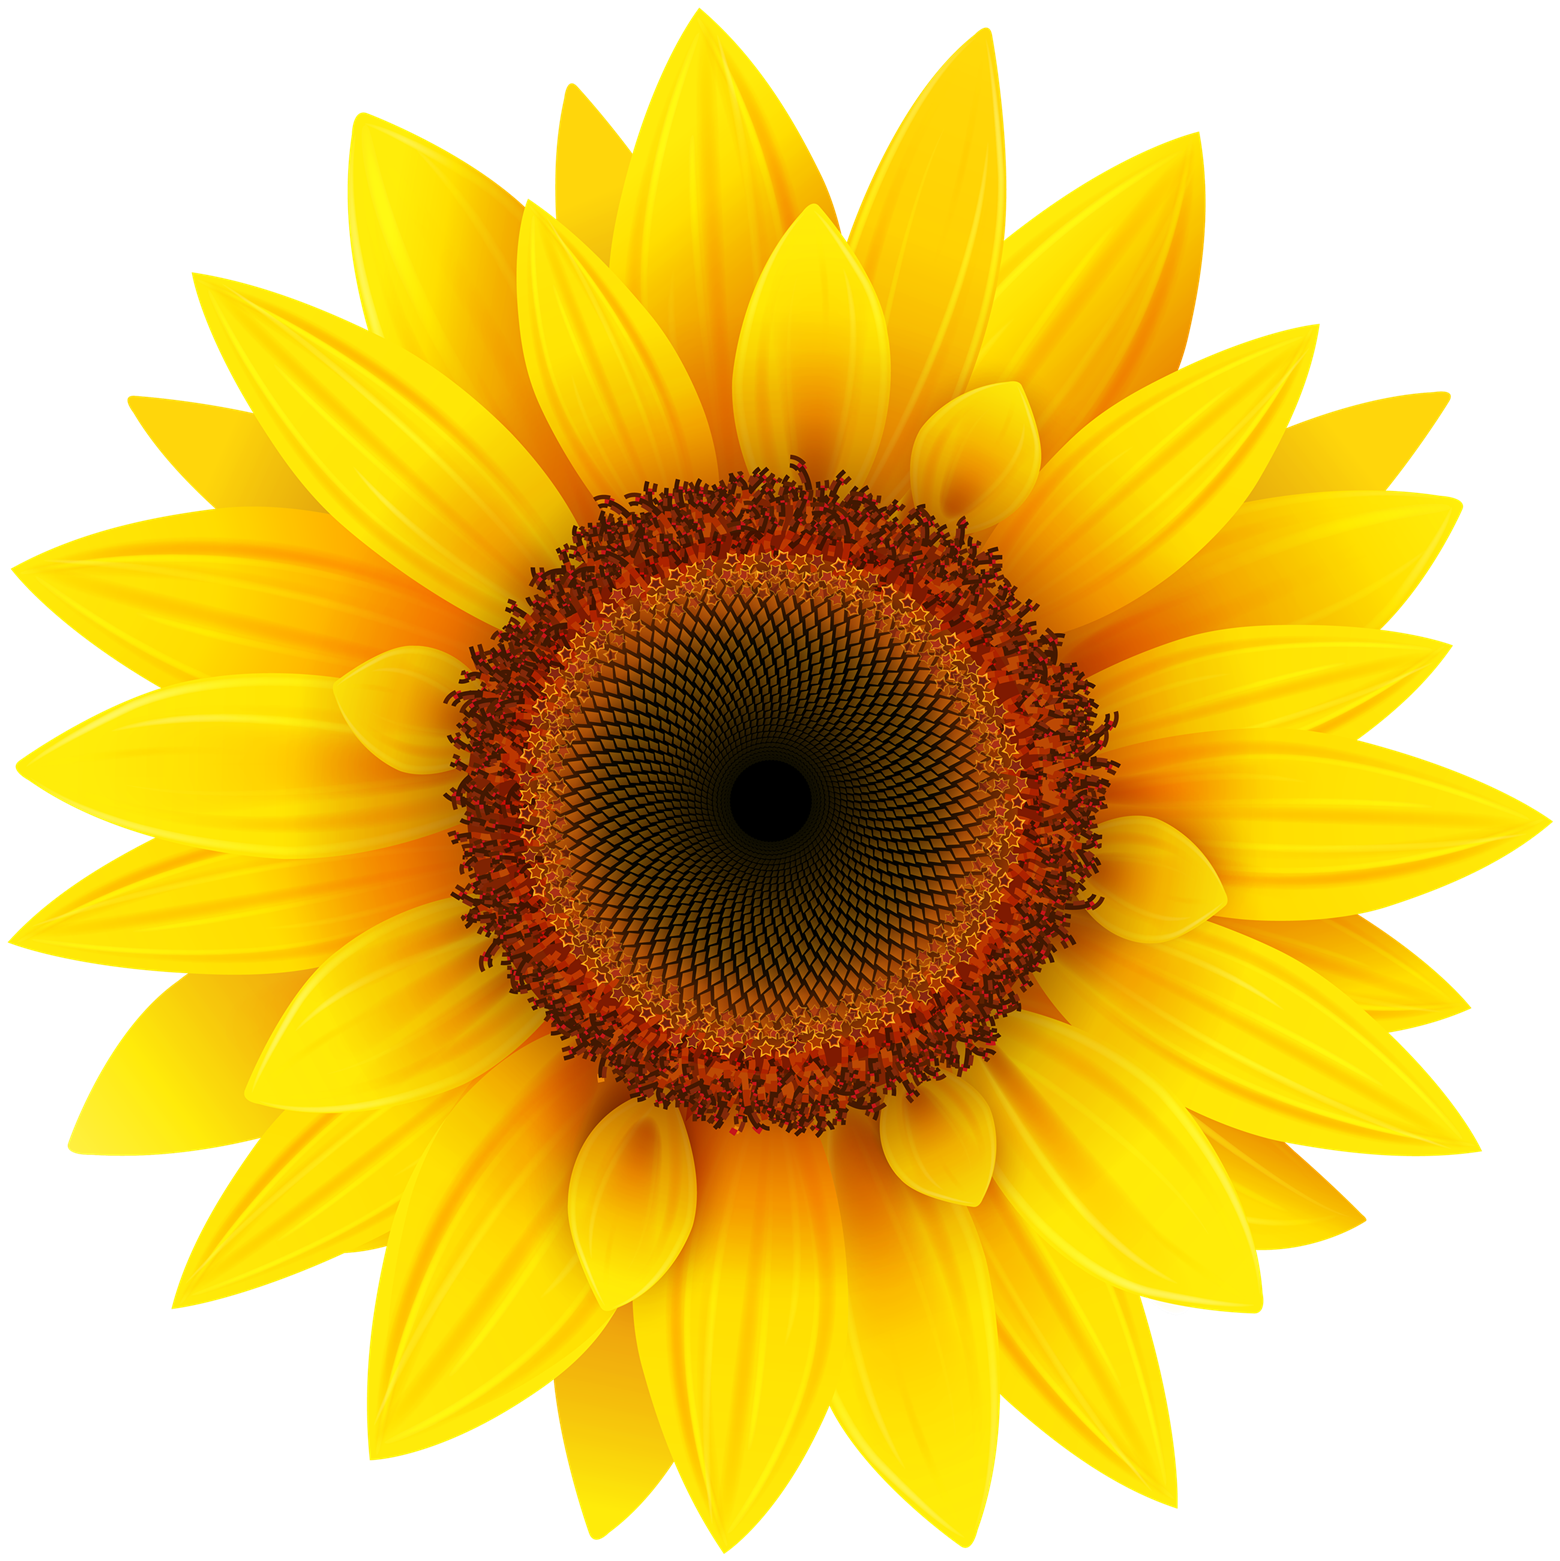 Download Sunflower Transparent Image HQ PNG Image | FreePNGImg